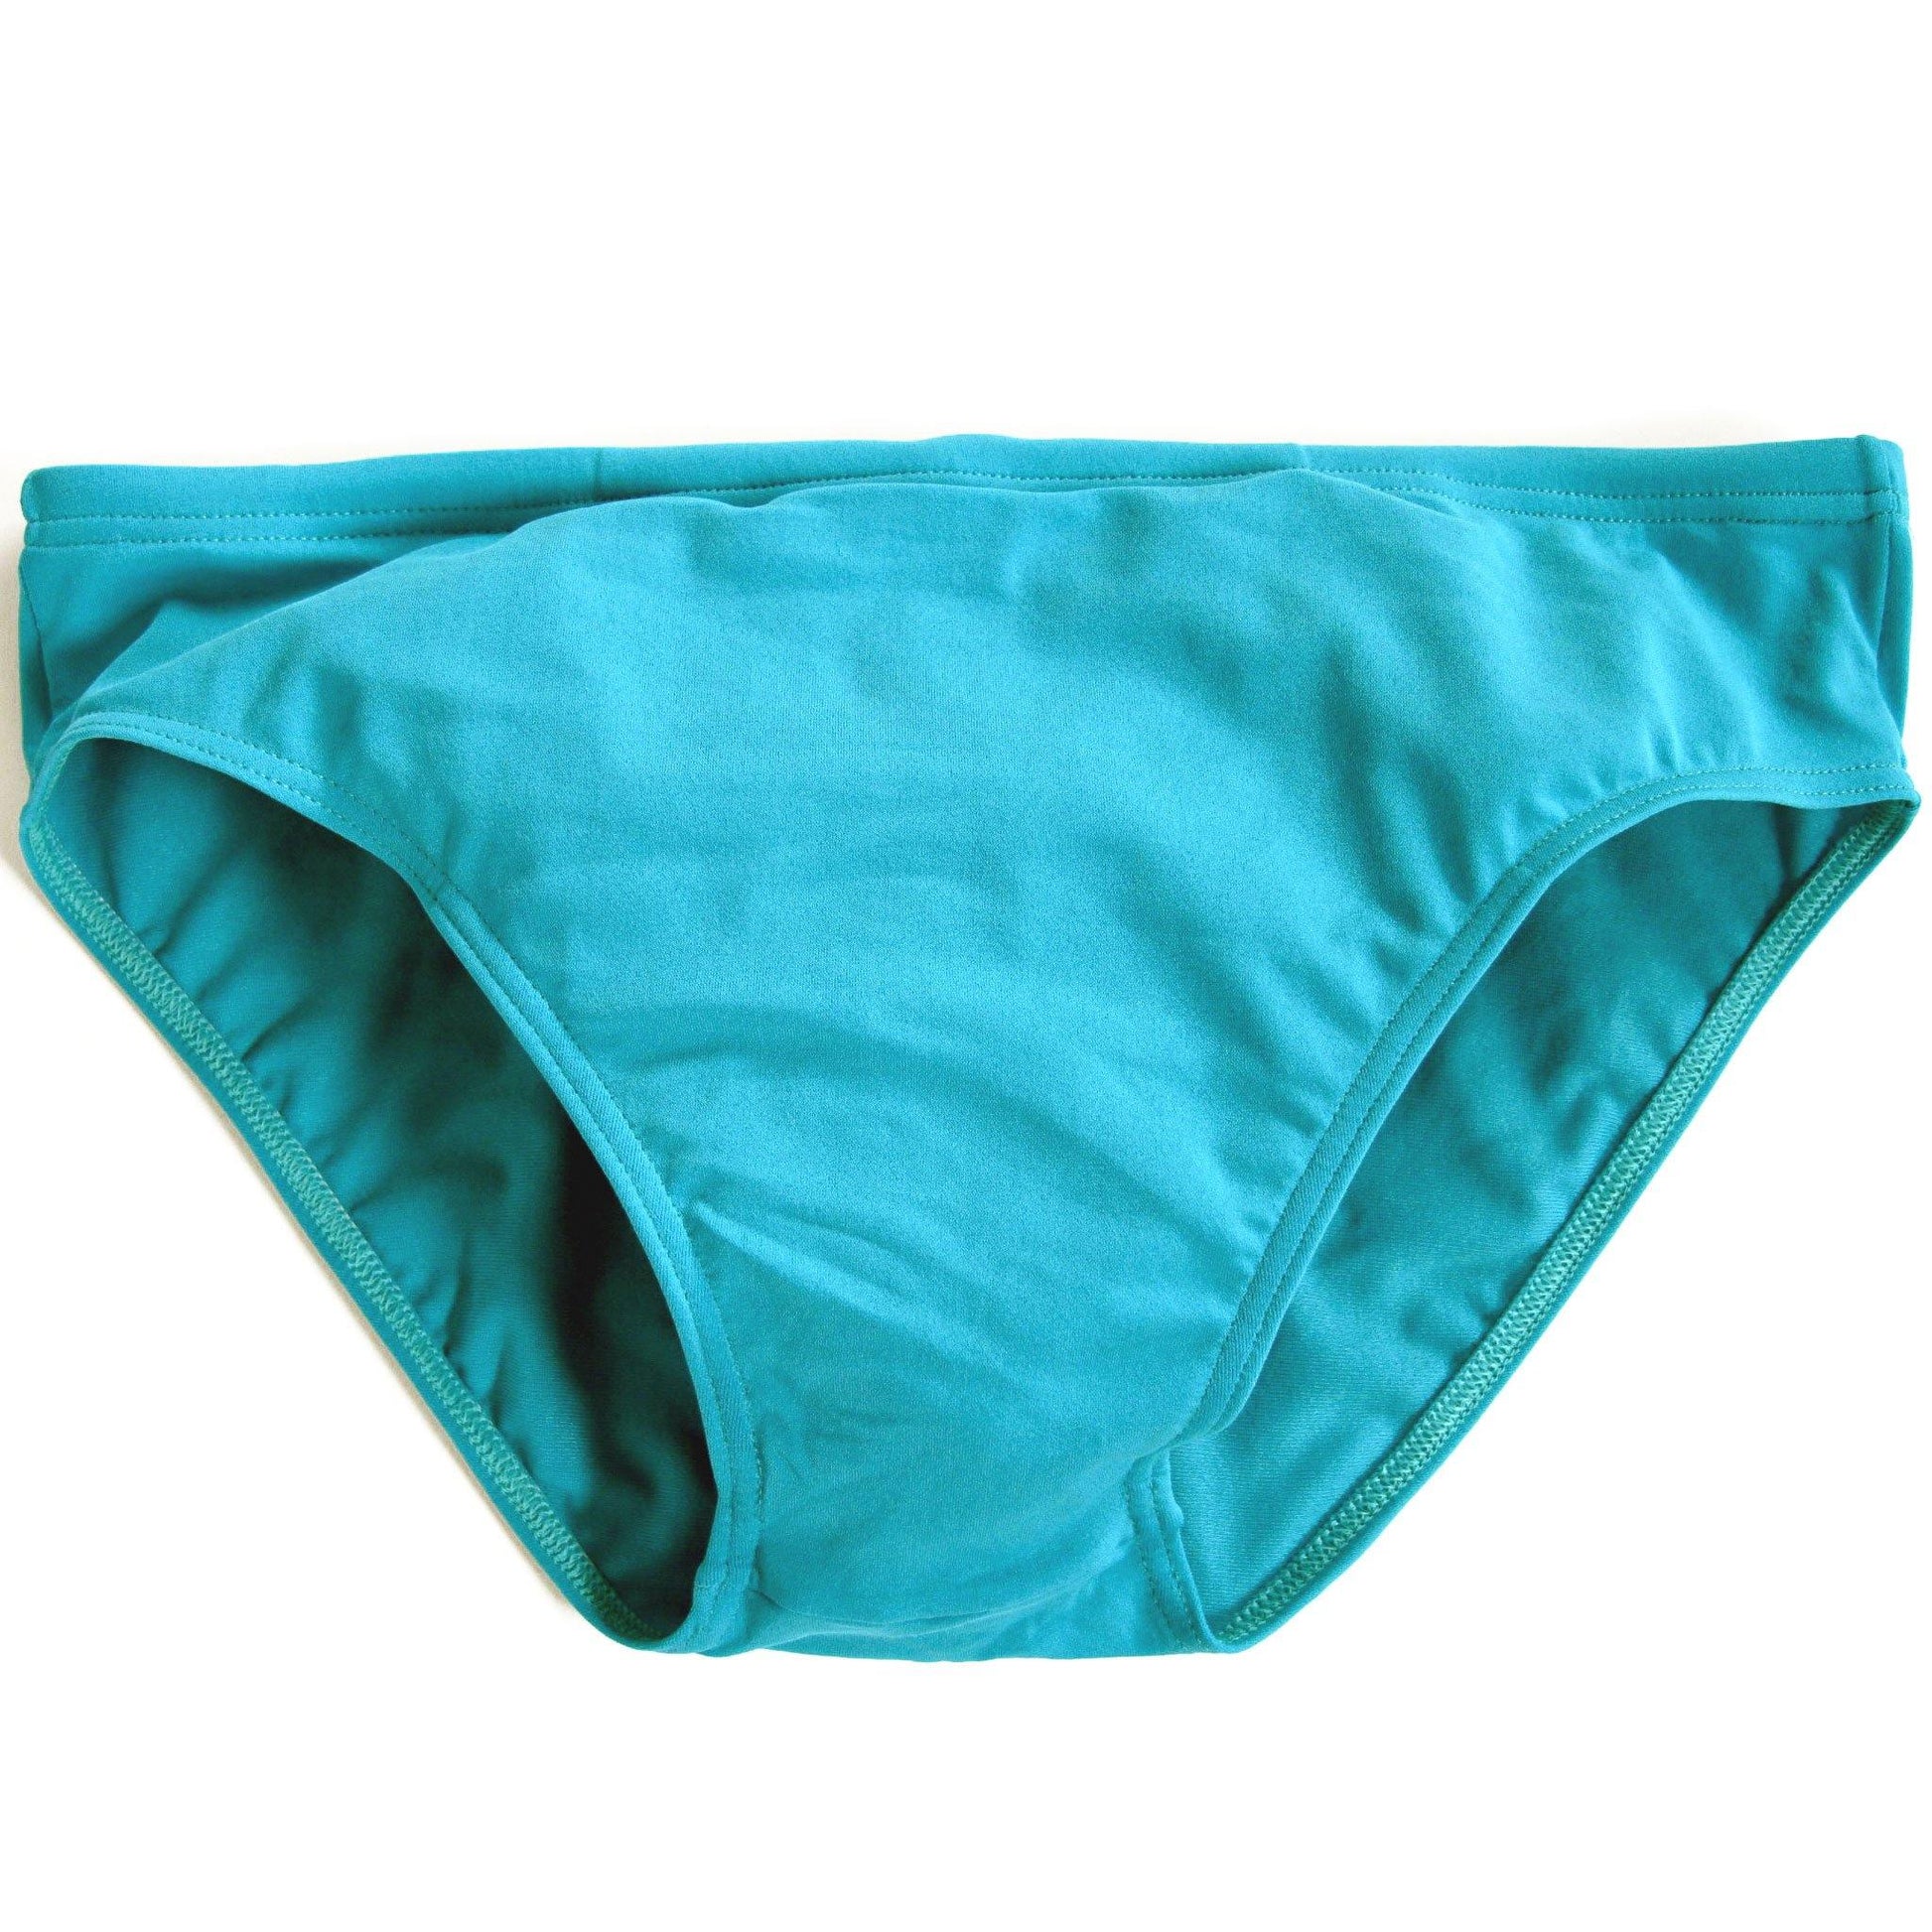 CIRCA75 Men's Swim Brief - Turquoise